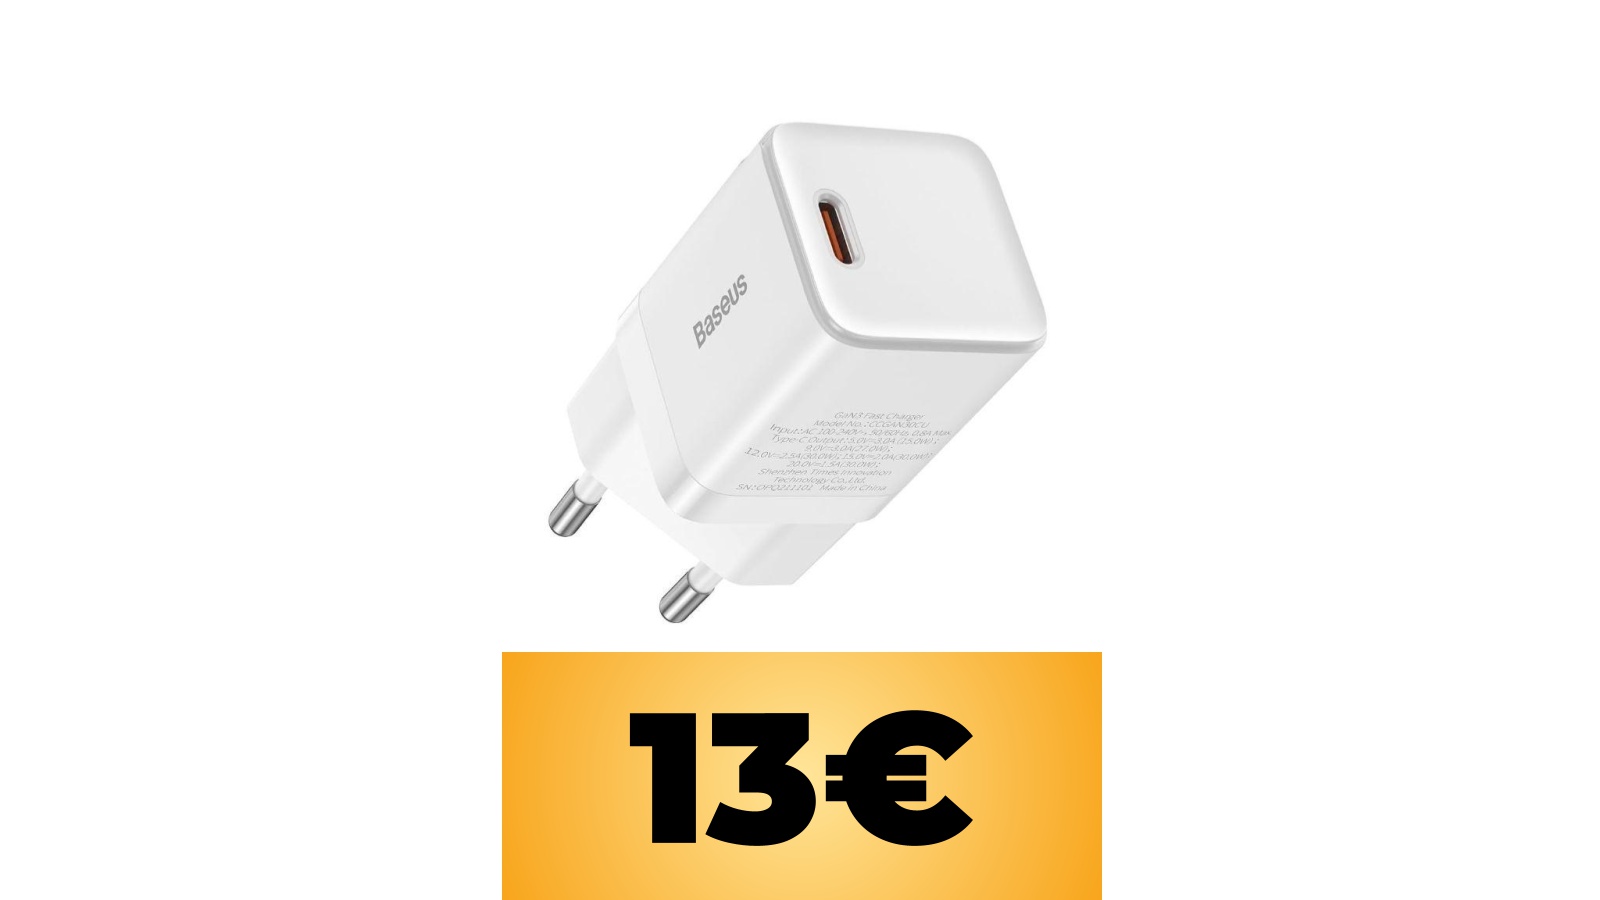 Alimentatore USB-C Baseus leggero e compatto in sconto con un coupon su Amazon Italia